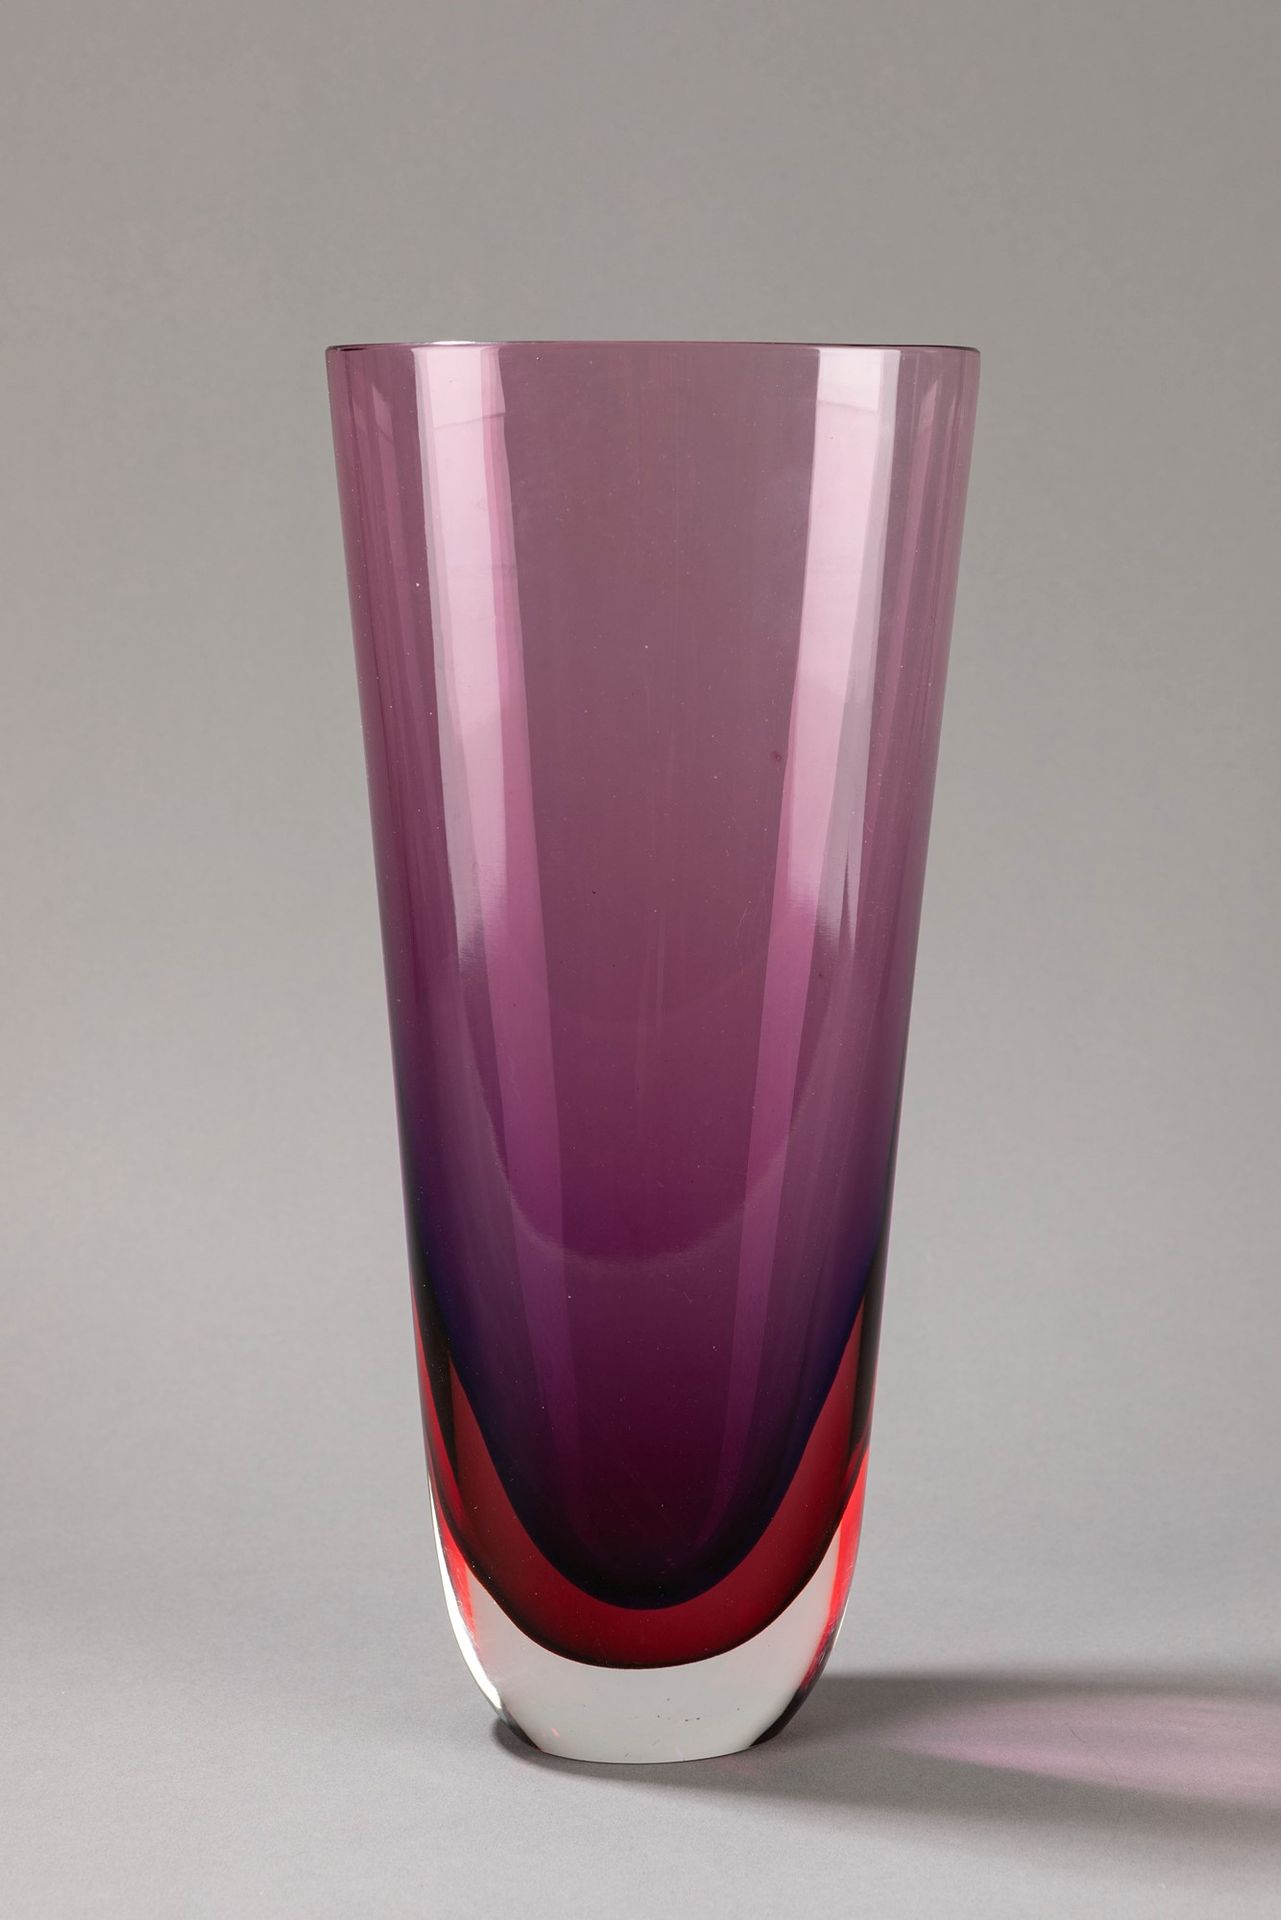 Flavio Poli 花瓶9818，1954

H 32 cm x 14,5 cm x 10 cm
sommerso吹制的玻璃，为第十届米兰三年展实现。

S&hellip;